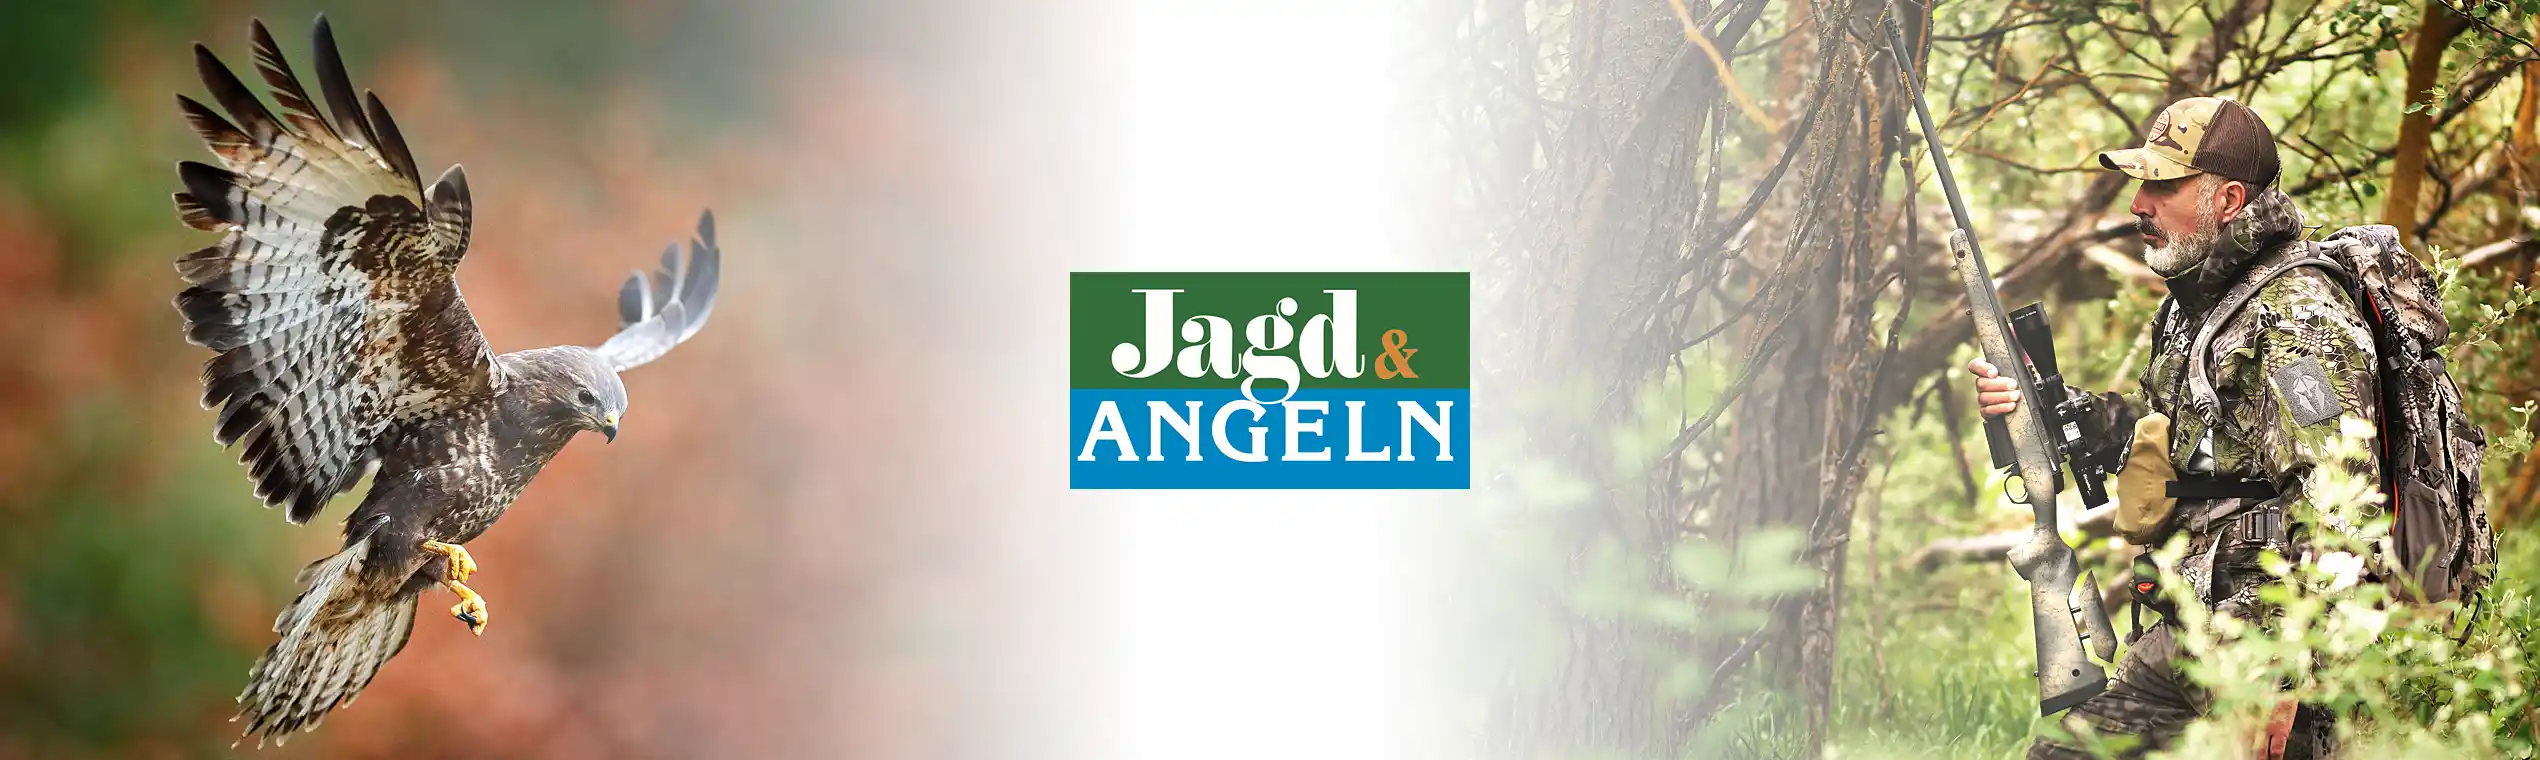 Fair Jagd & Angeln | Leipzig